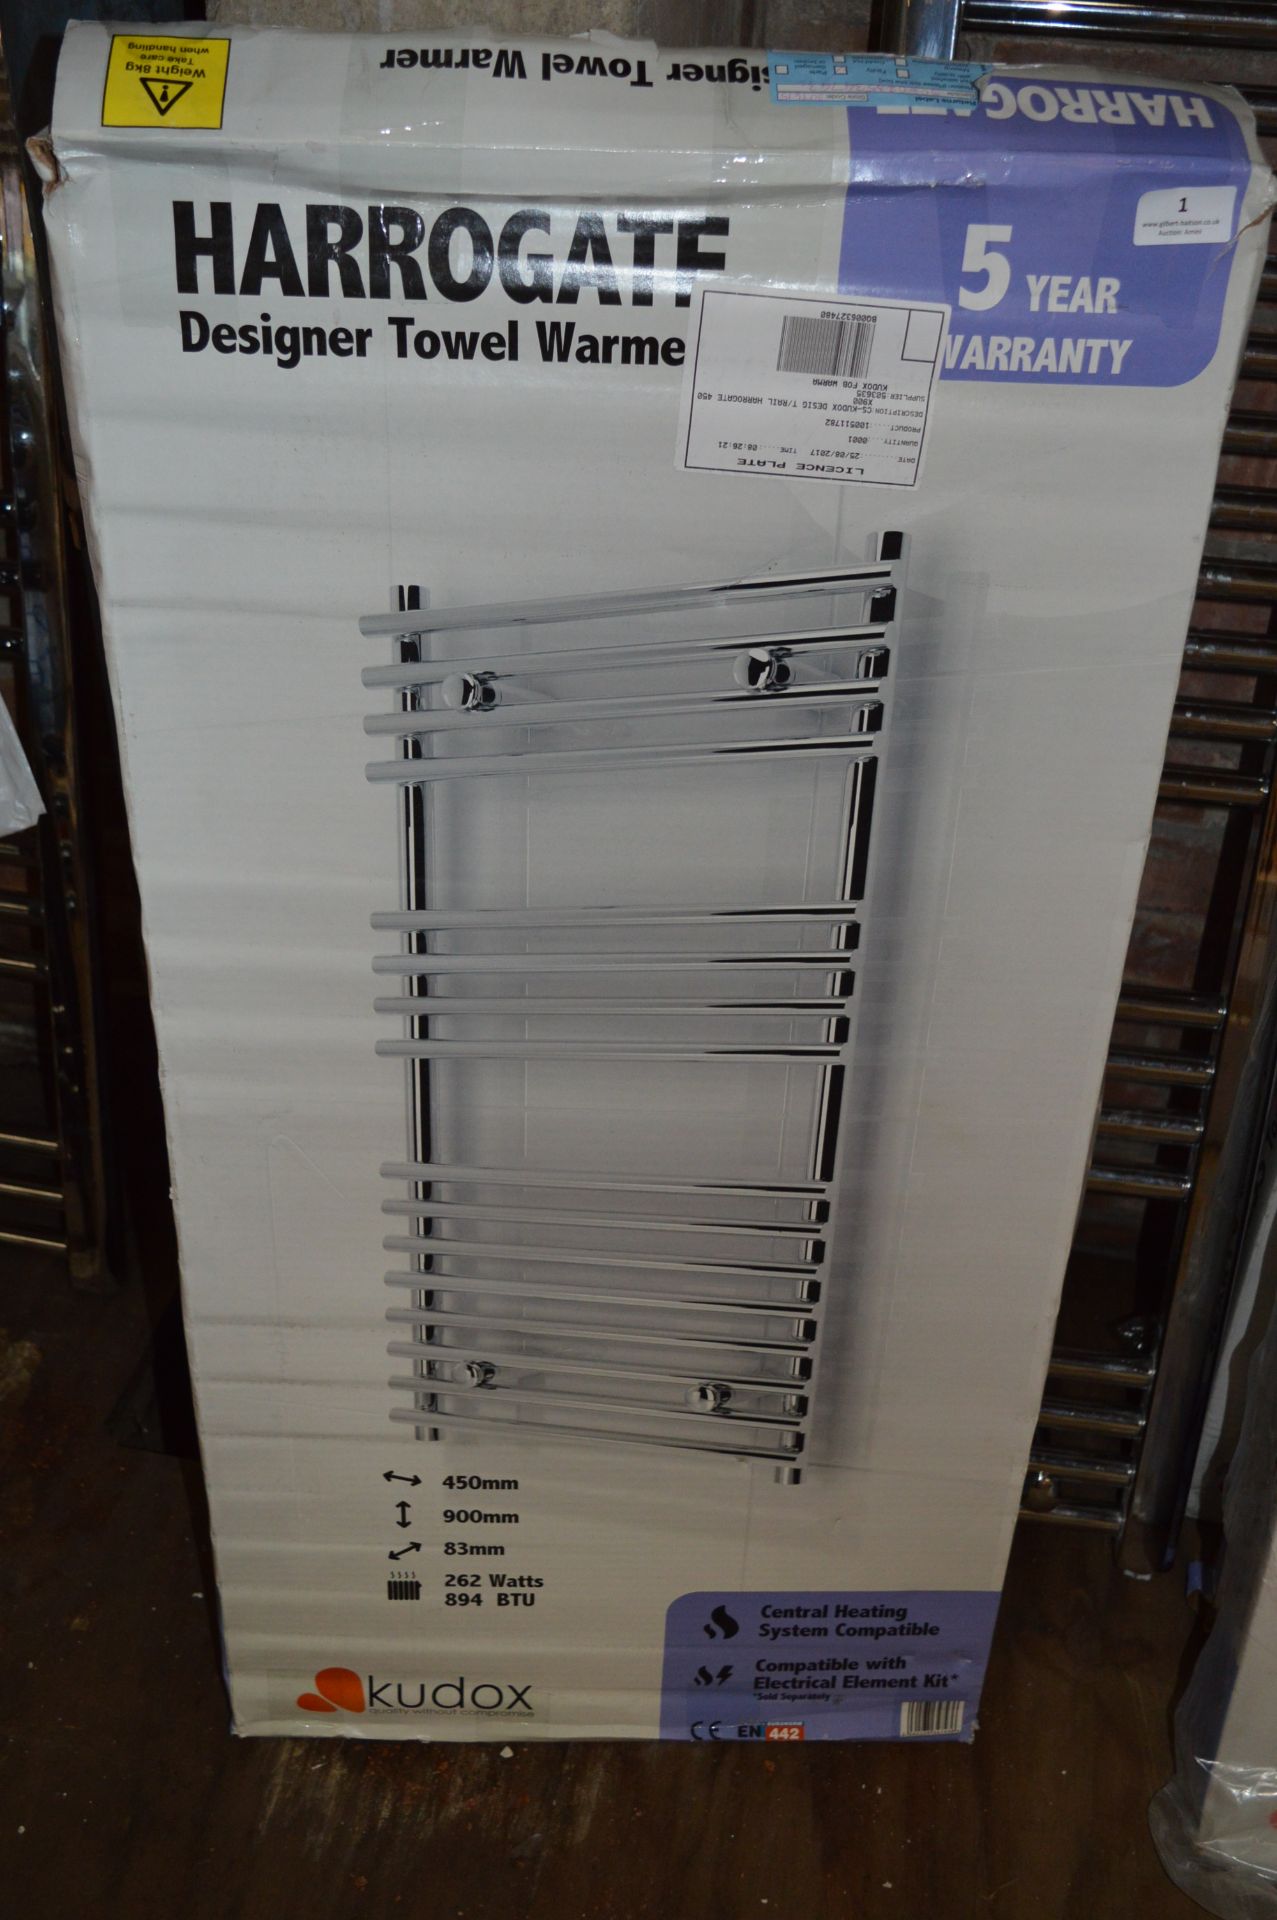 *Kudox Harrogate Designer Towel Warmer 450x900mm